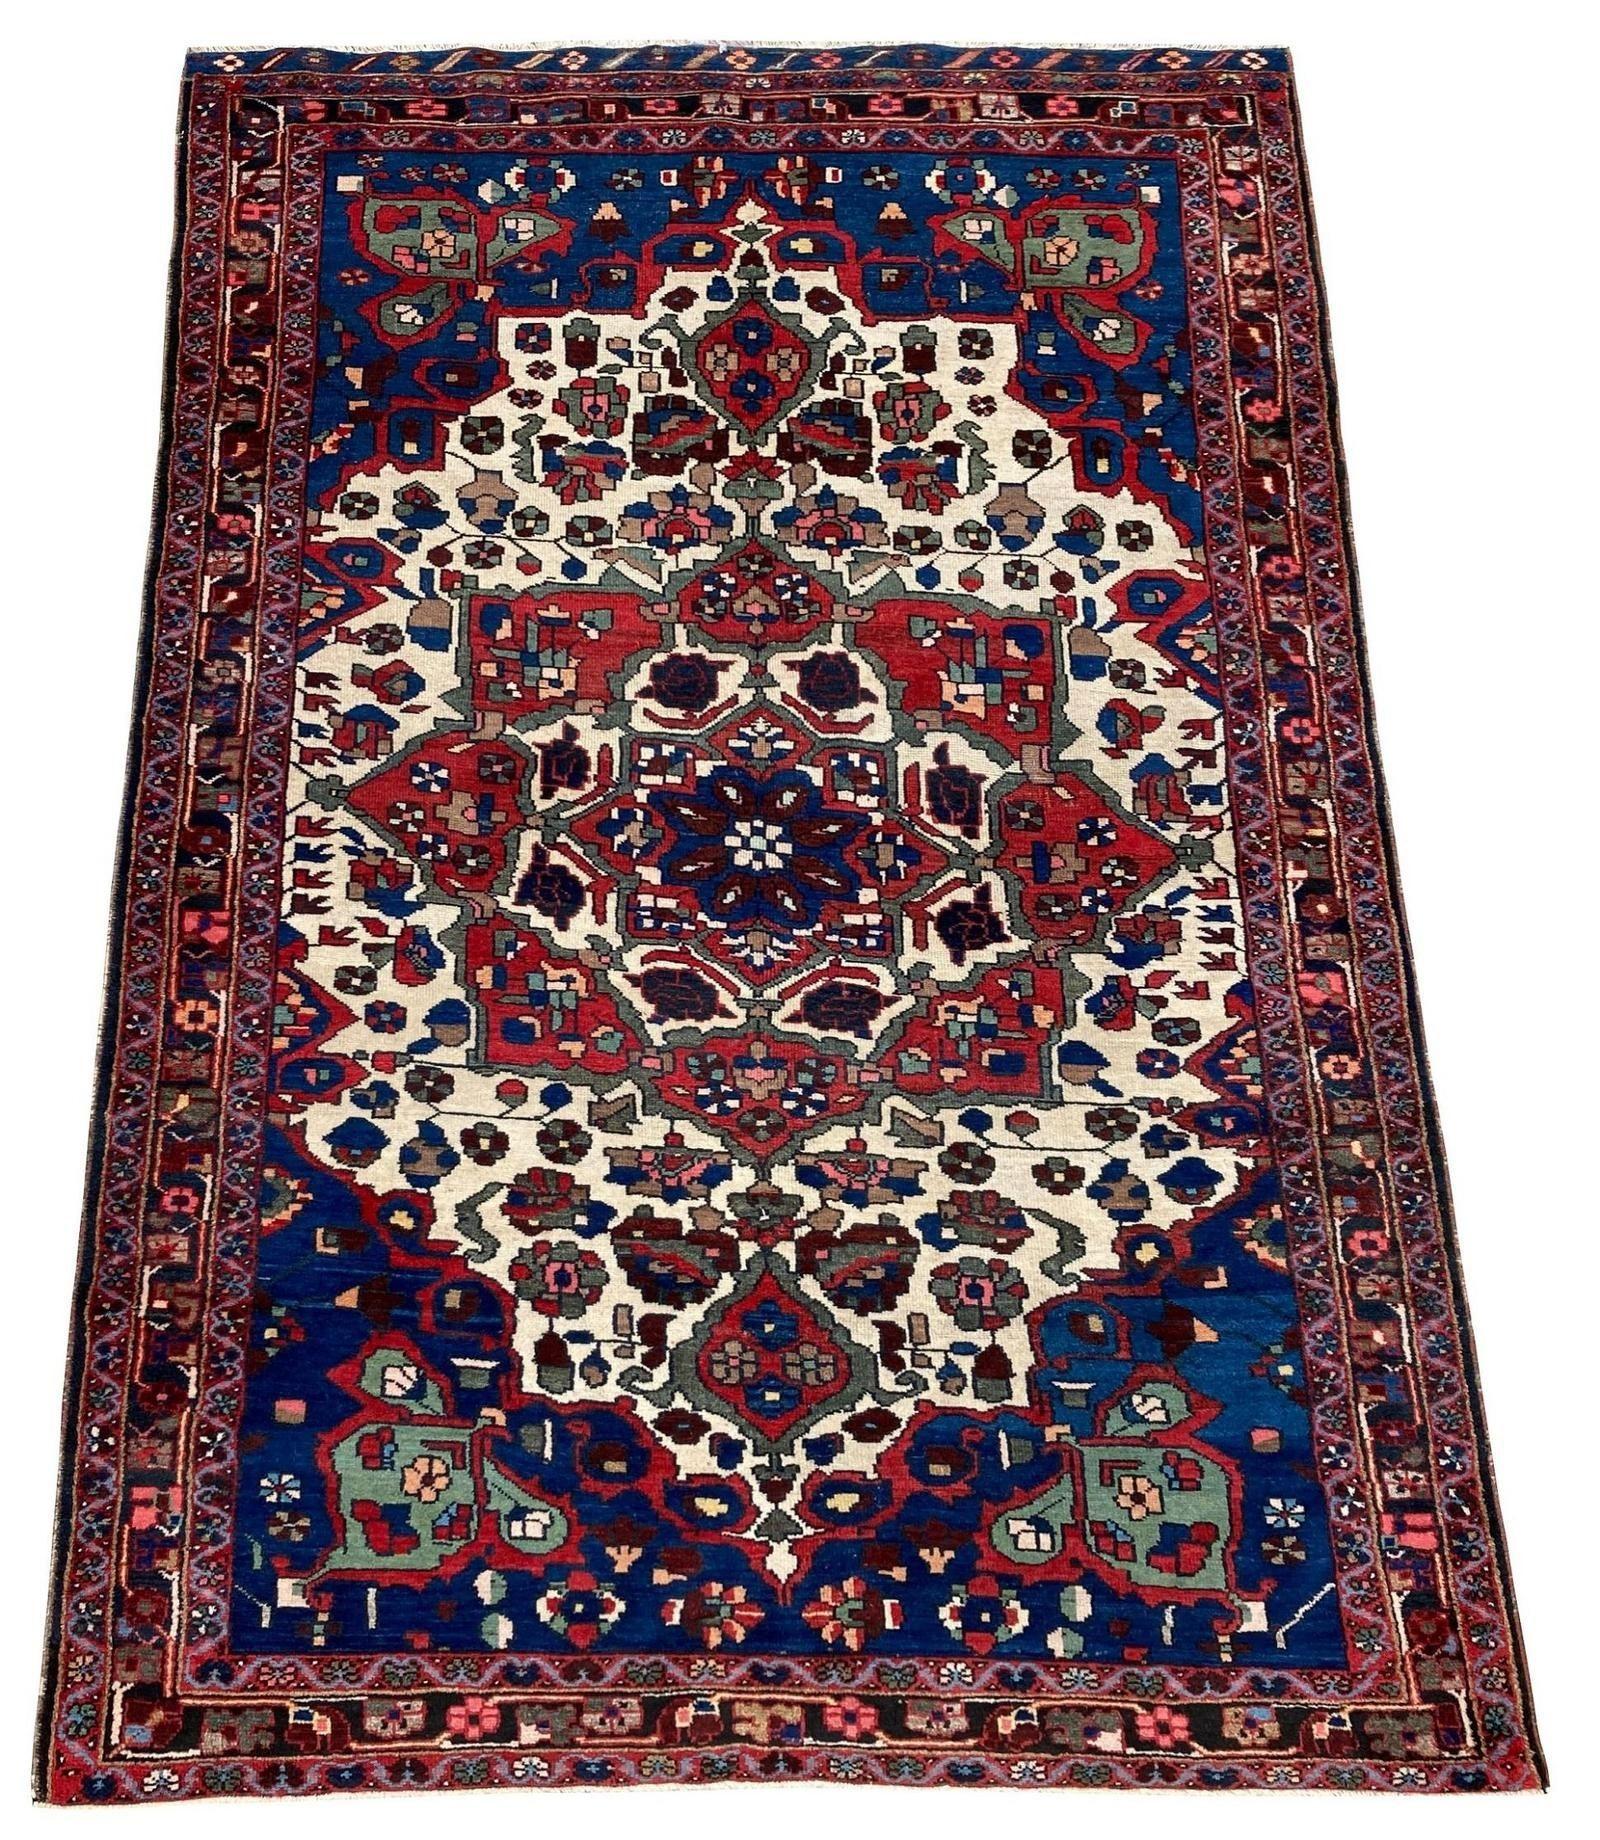 Ein schöner antiker Bachtiar-Teppich, handgewebt um 1910 mit einem kreisförmigen Medaillon auf einem elfenbeinfarbenen Feld mit stilisierten Blumen. Schöne Wollqualität und fabelhafte Sekundärfarben!
Größe: 1,92m x 1,35m (6ft 4in x 4ft 5in)
Dieser